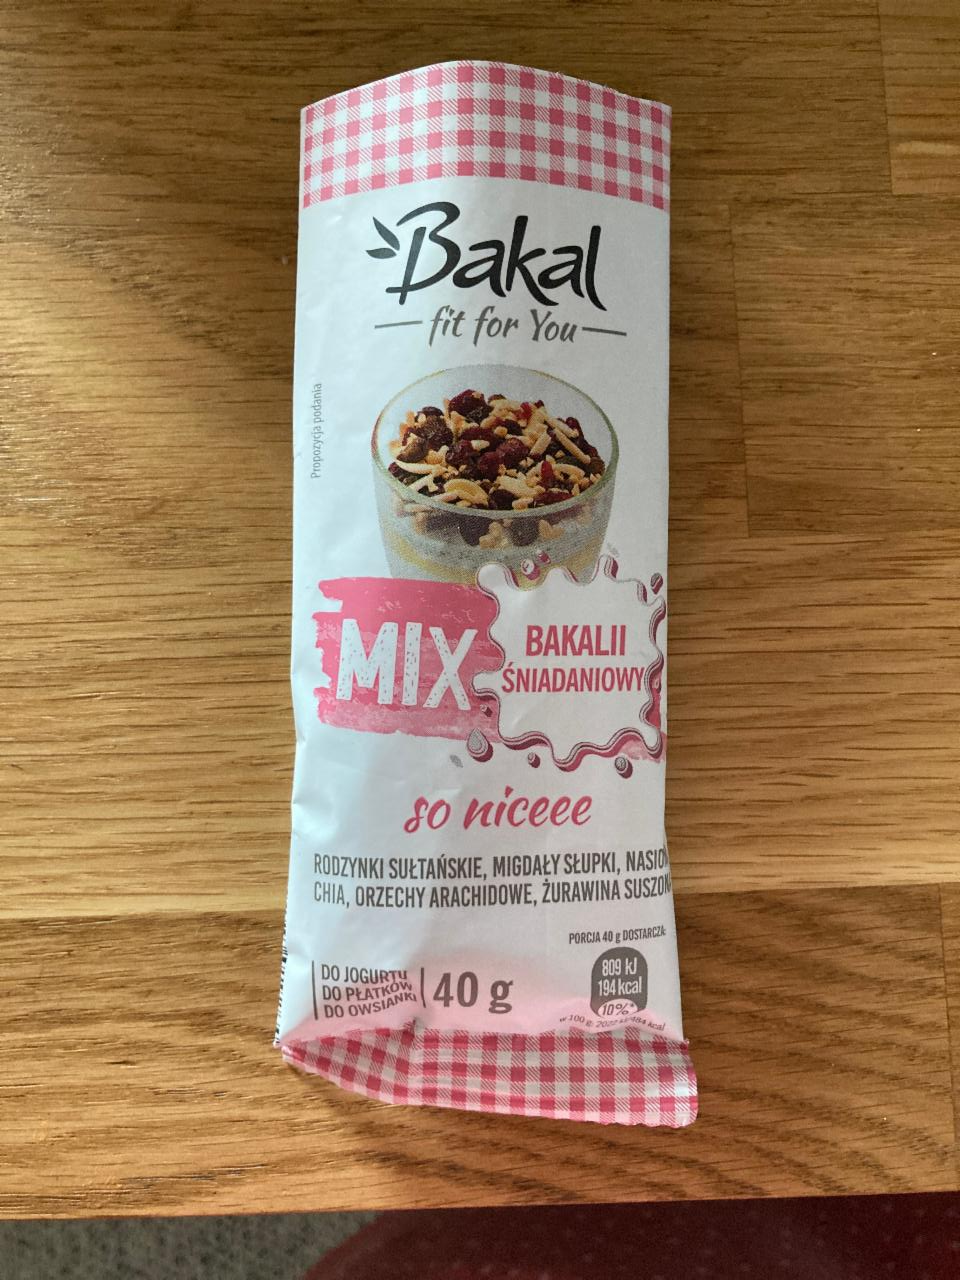 Zdjęcia - Mix Bakalii sniadaniowy so niceee Bakal fit for you